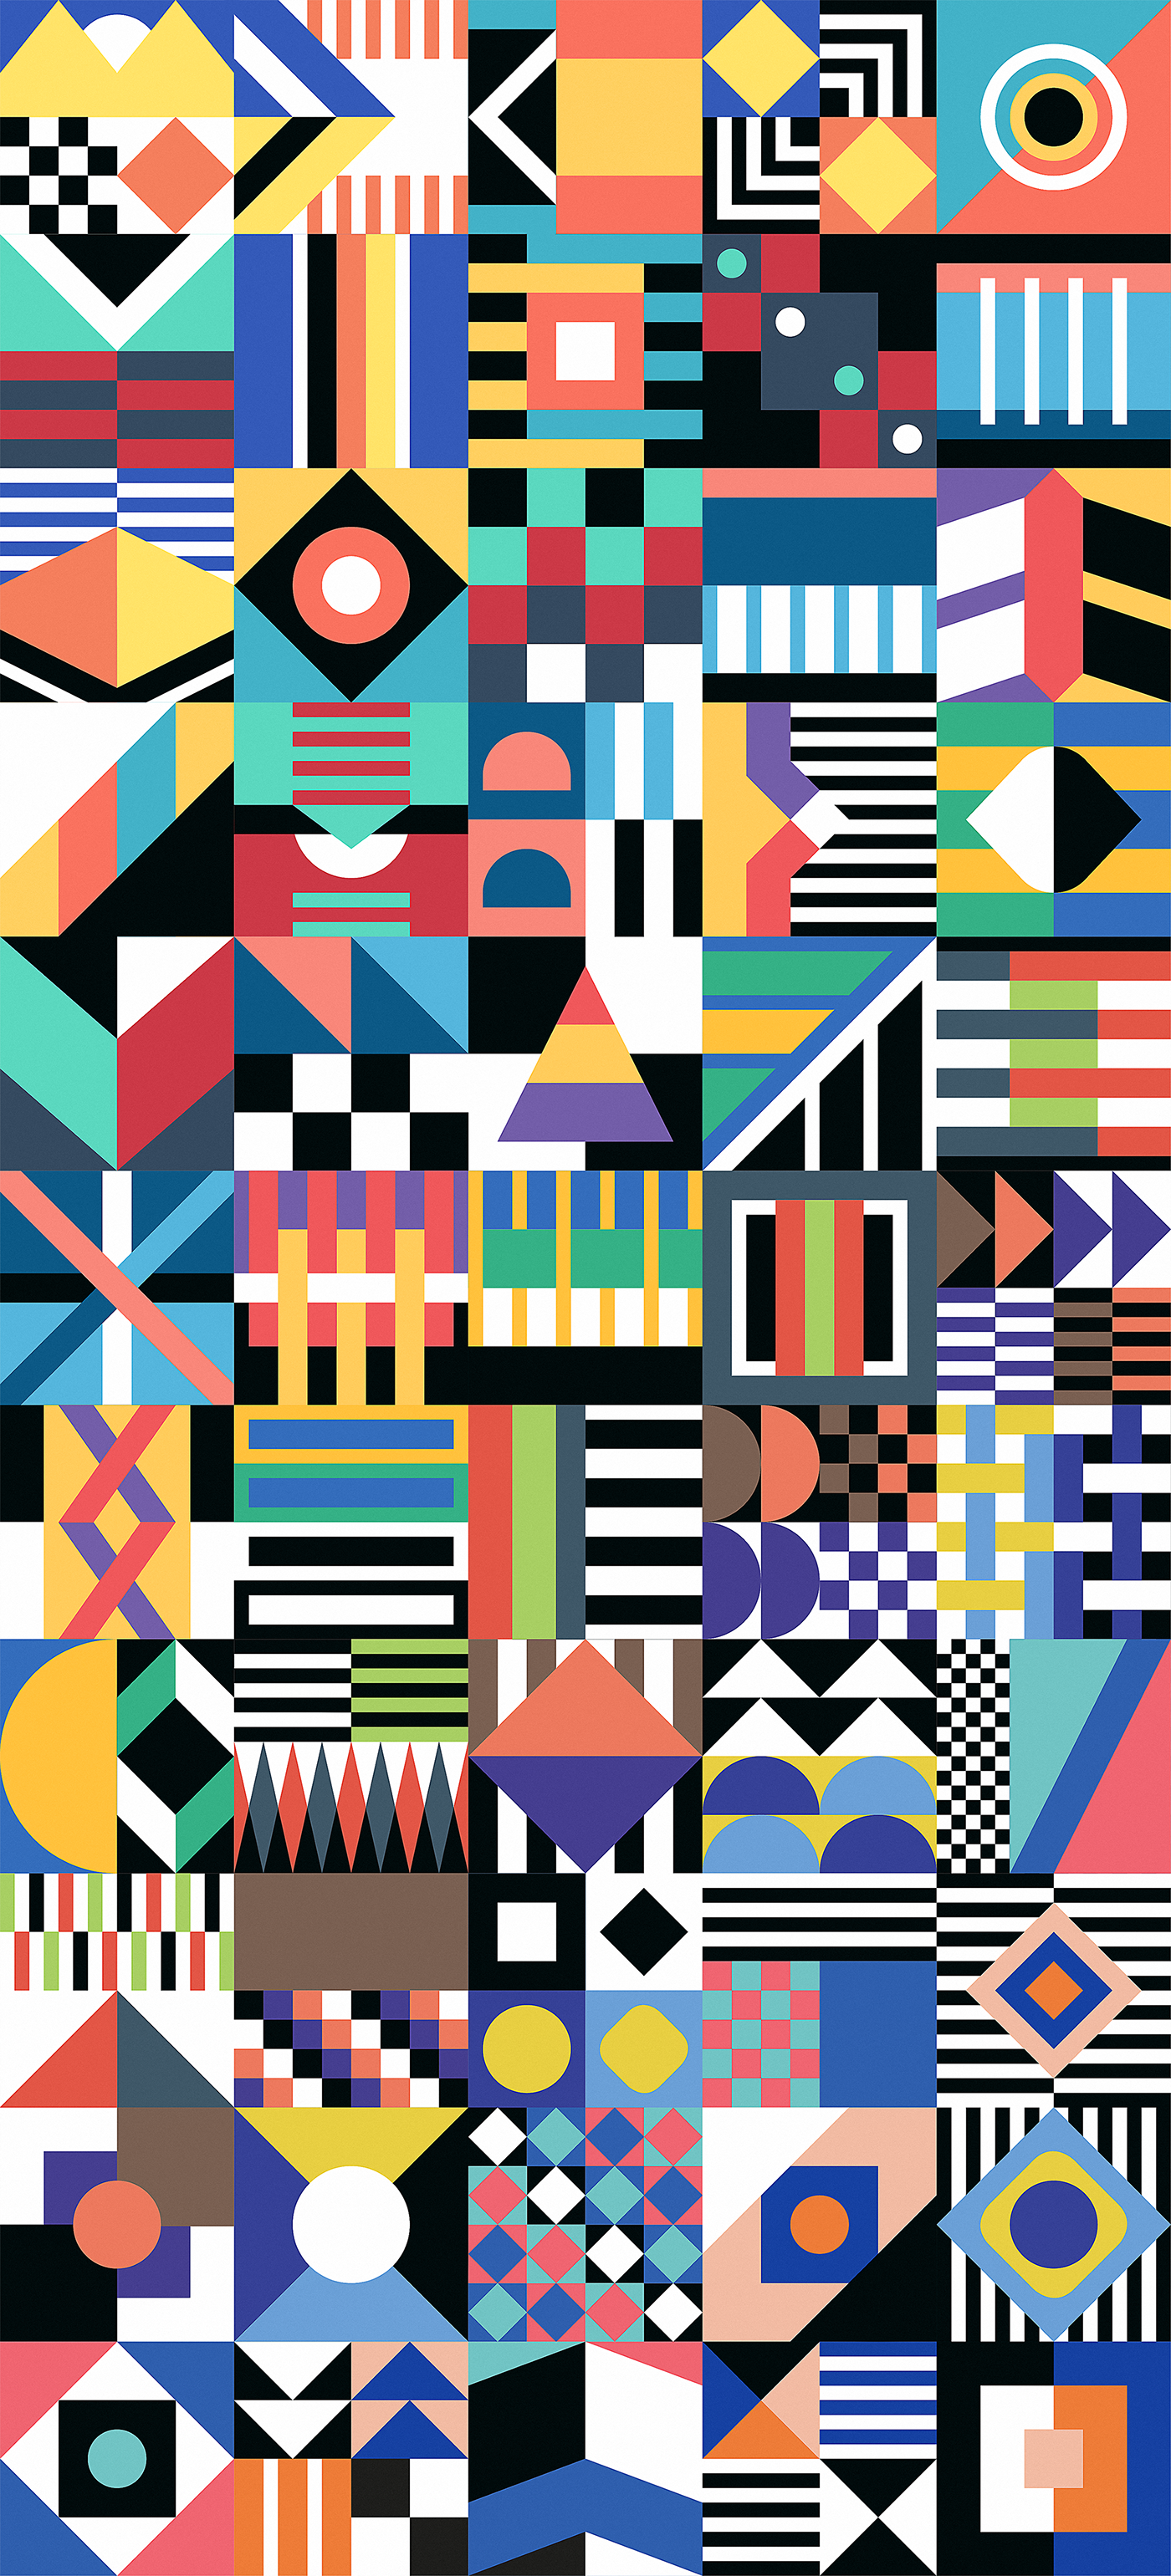 Adobe Portfolio invisible Cities italo calvino graphic spin-off ESAD matosinhos geometric Colourful  pattern Interpretation book poster inspire